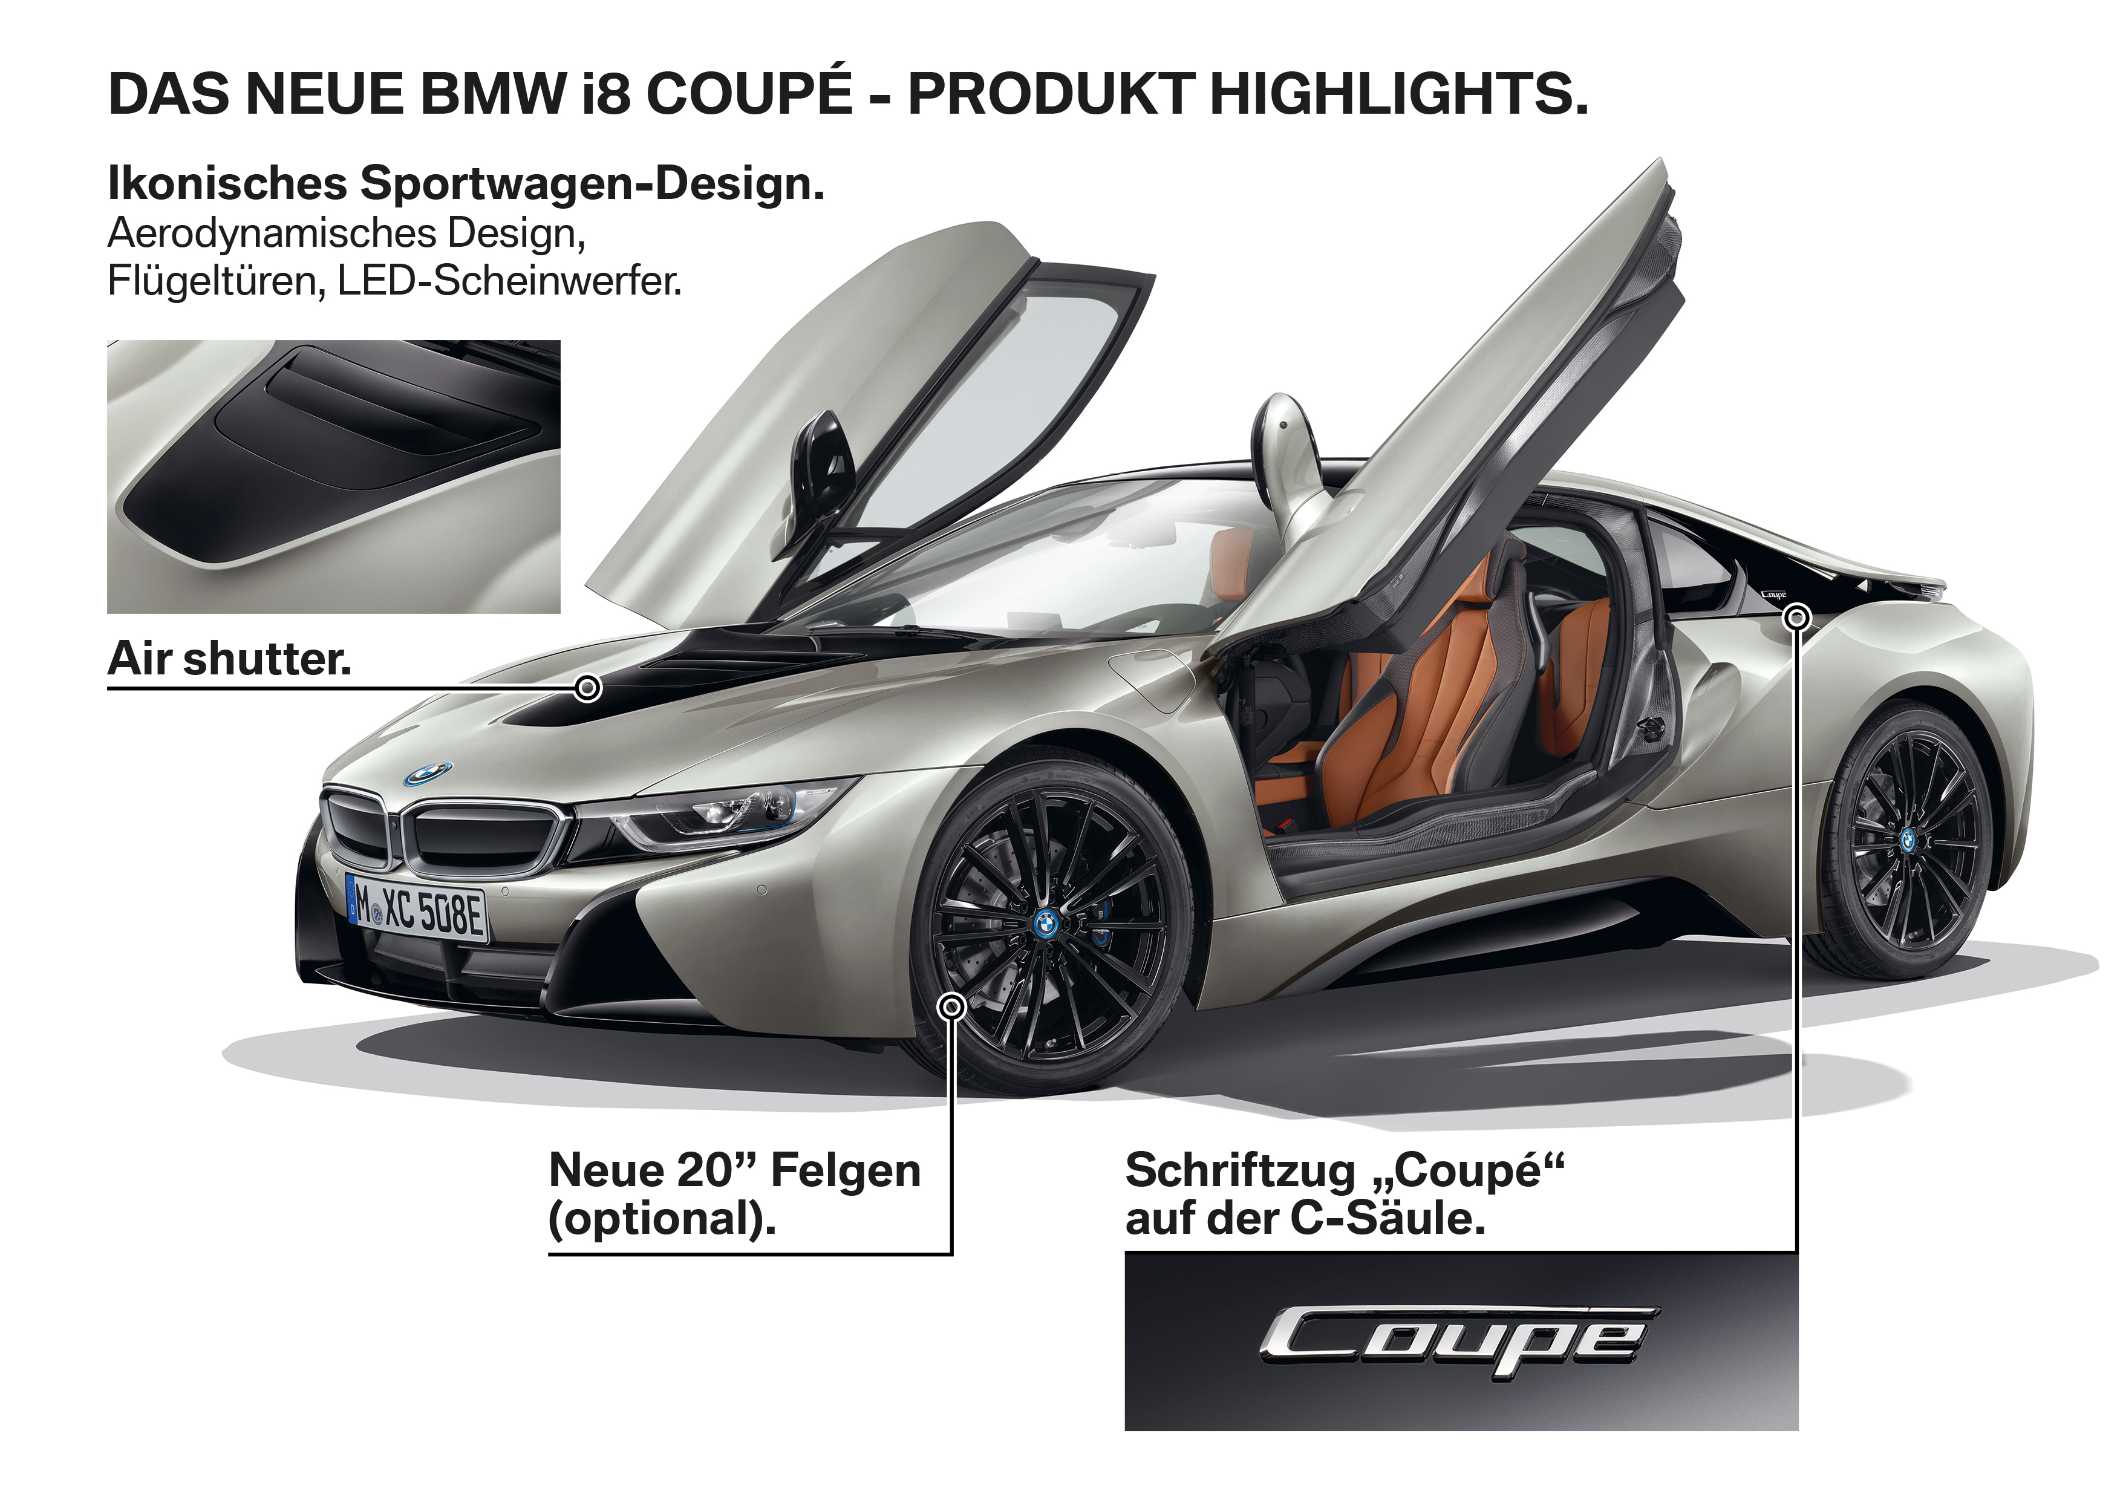 Das neue BMW i8 Coupé - Produkt Highlights. (11/2017)